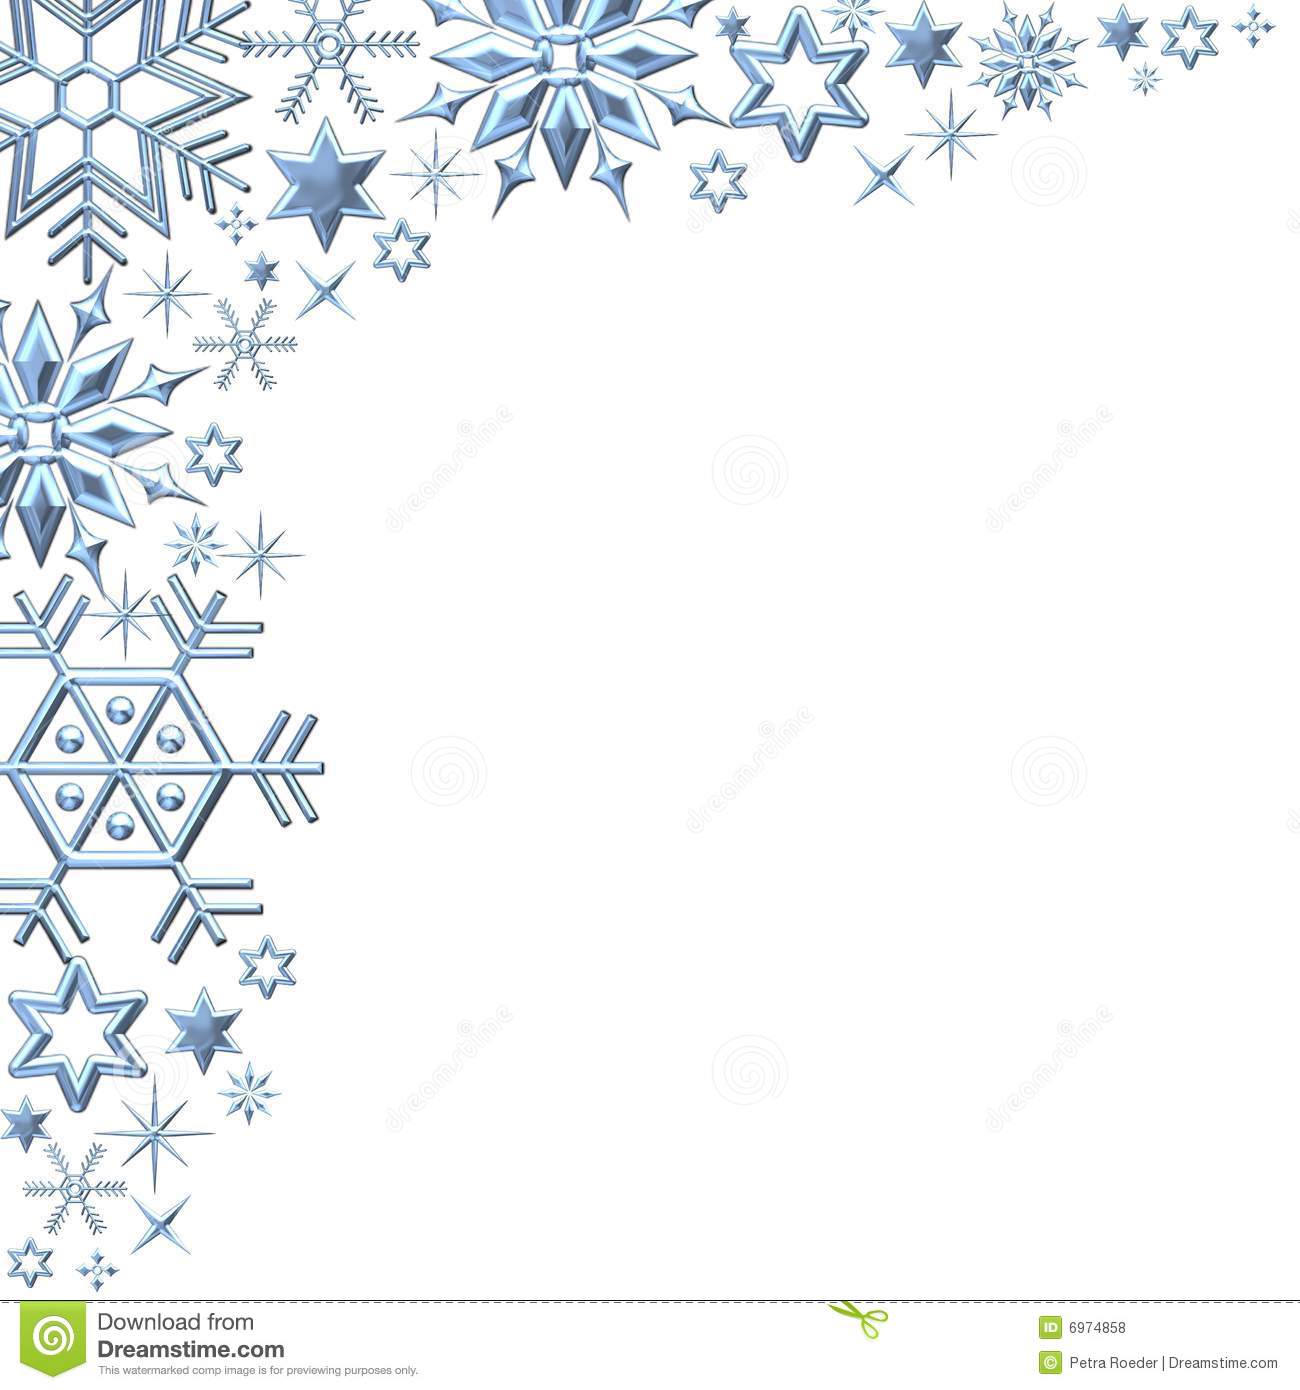 Snowflakes Border On White Royalty Free Stock Photos   Image  6974858